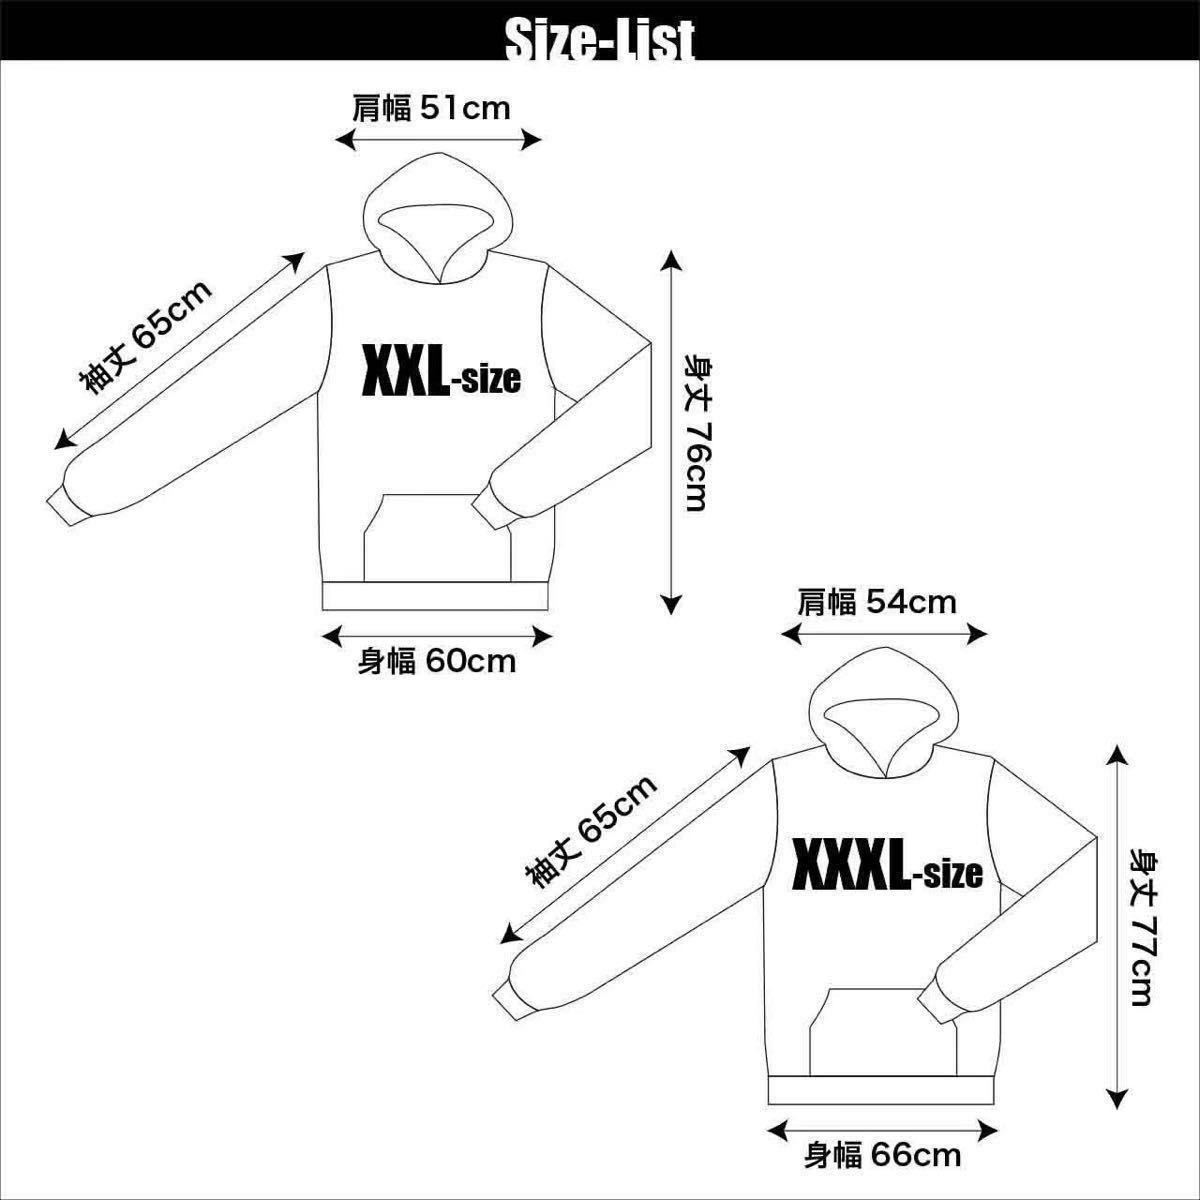 新品 マイケル ジャクソン5 R&B アフロ 兄弟 黒人 アイドル ポップアート パーカー XS S M L XL ビッグ オーバー サイズ XXL Tシャツ ロンT_画像6